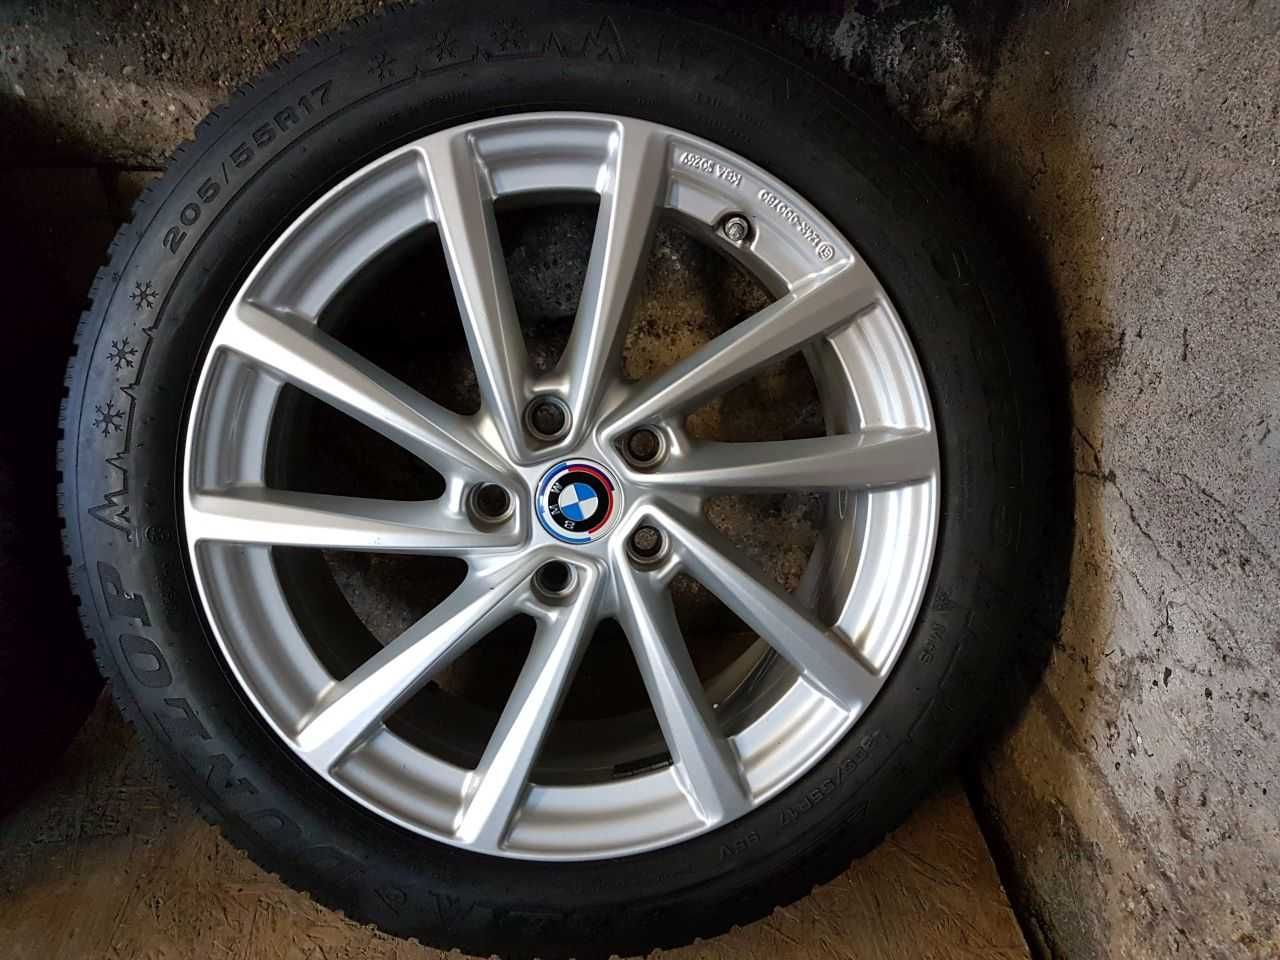 Felgi alu BMW VW Skoda R17 5x112 opony zimowe 205/55R17 6mm Dunlop